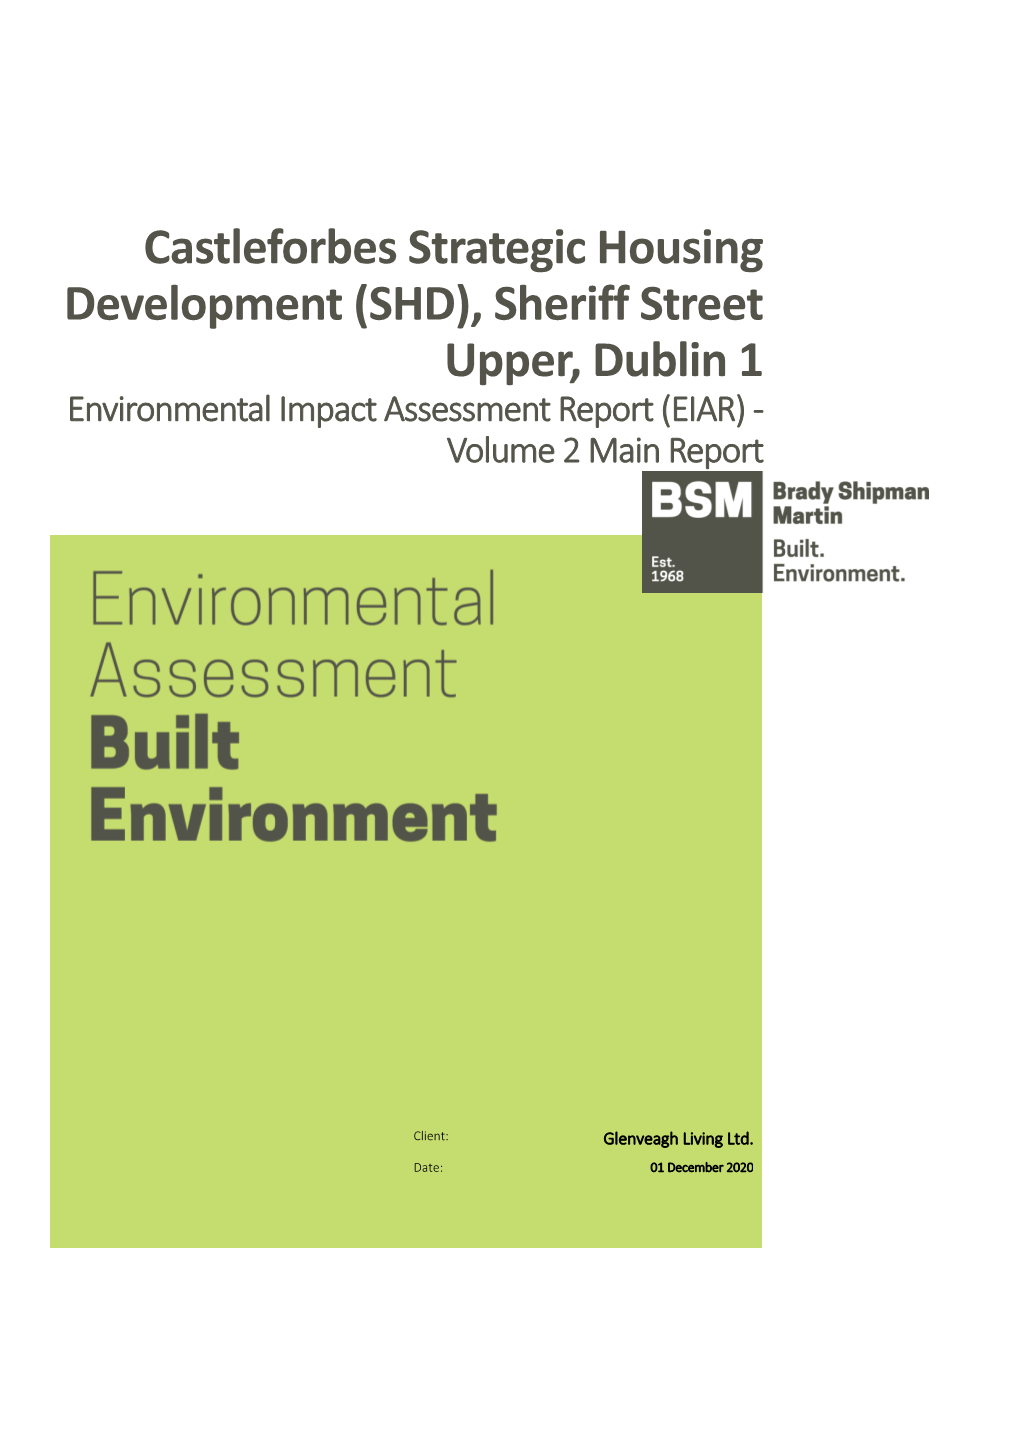 Castleforbes Strategic Housing Development (SHD), Sheriff Street Upper, Dublin 1 Environmental Impact Assessment Report (EIAR) - Volume 2 Main Report